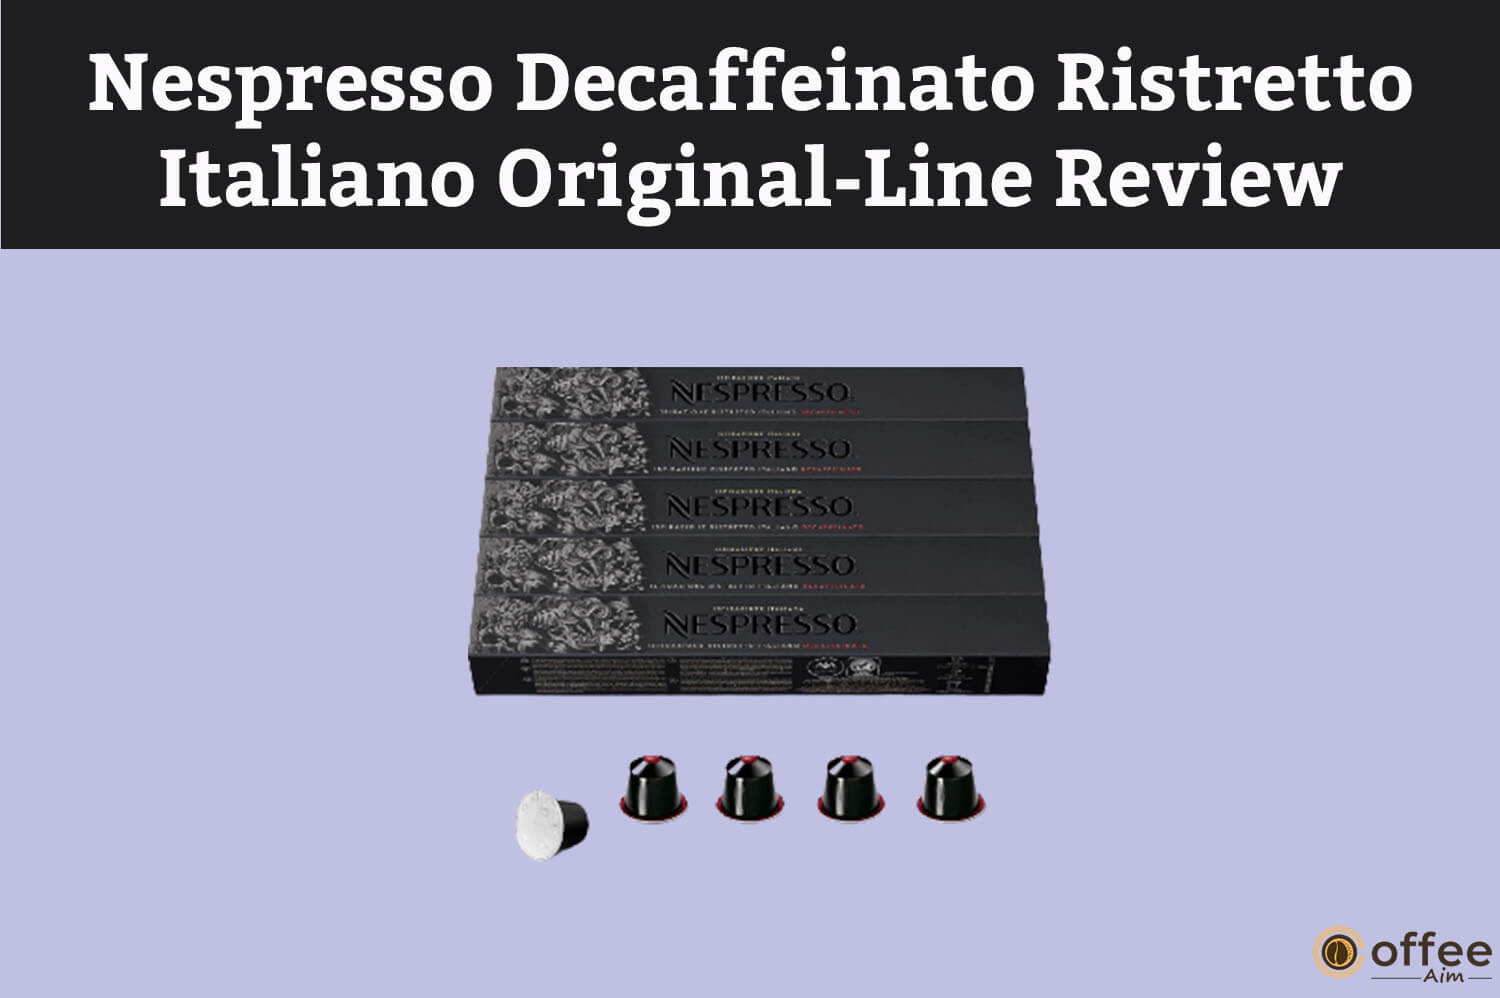 Featured image for the article "Nespresso Decaffeinato Ristretto Italiano Original-Line Review"